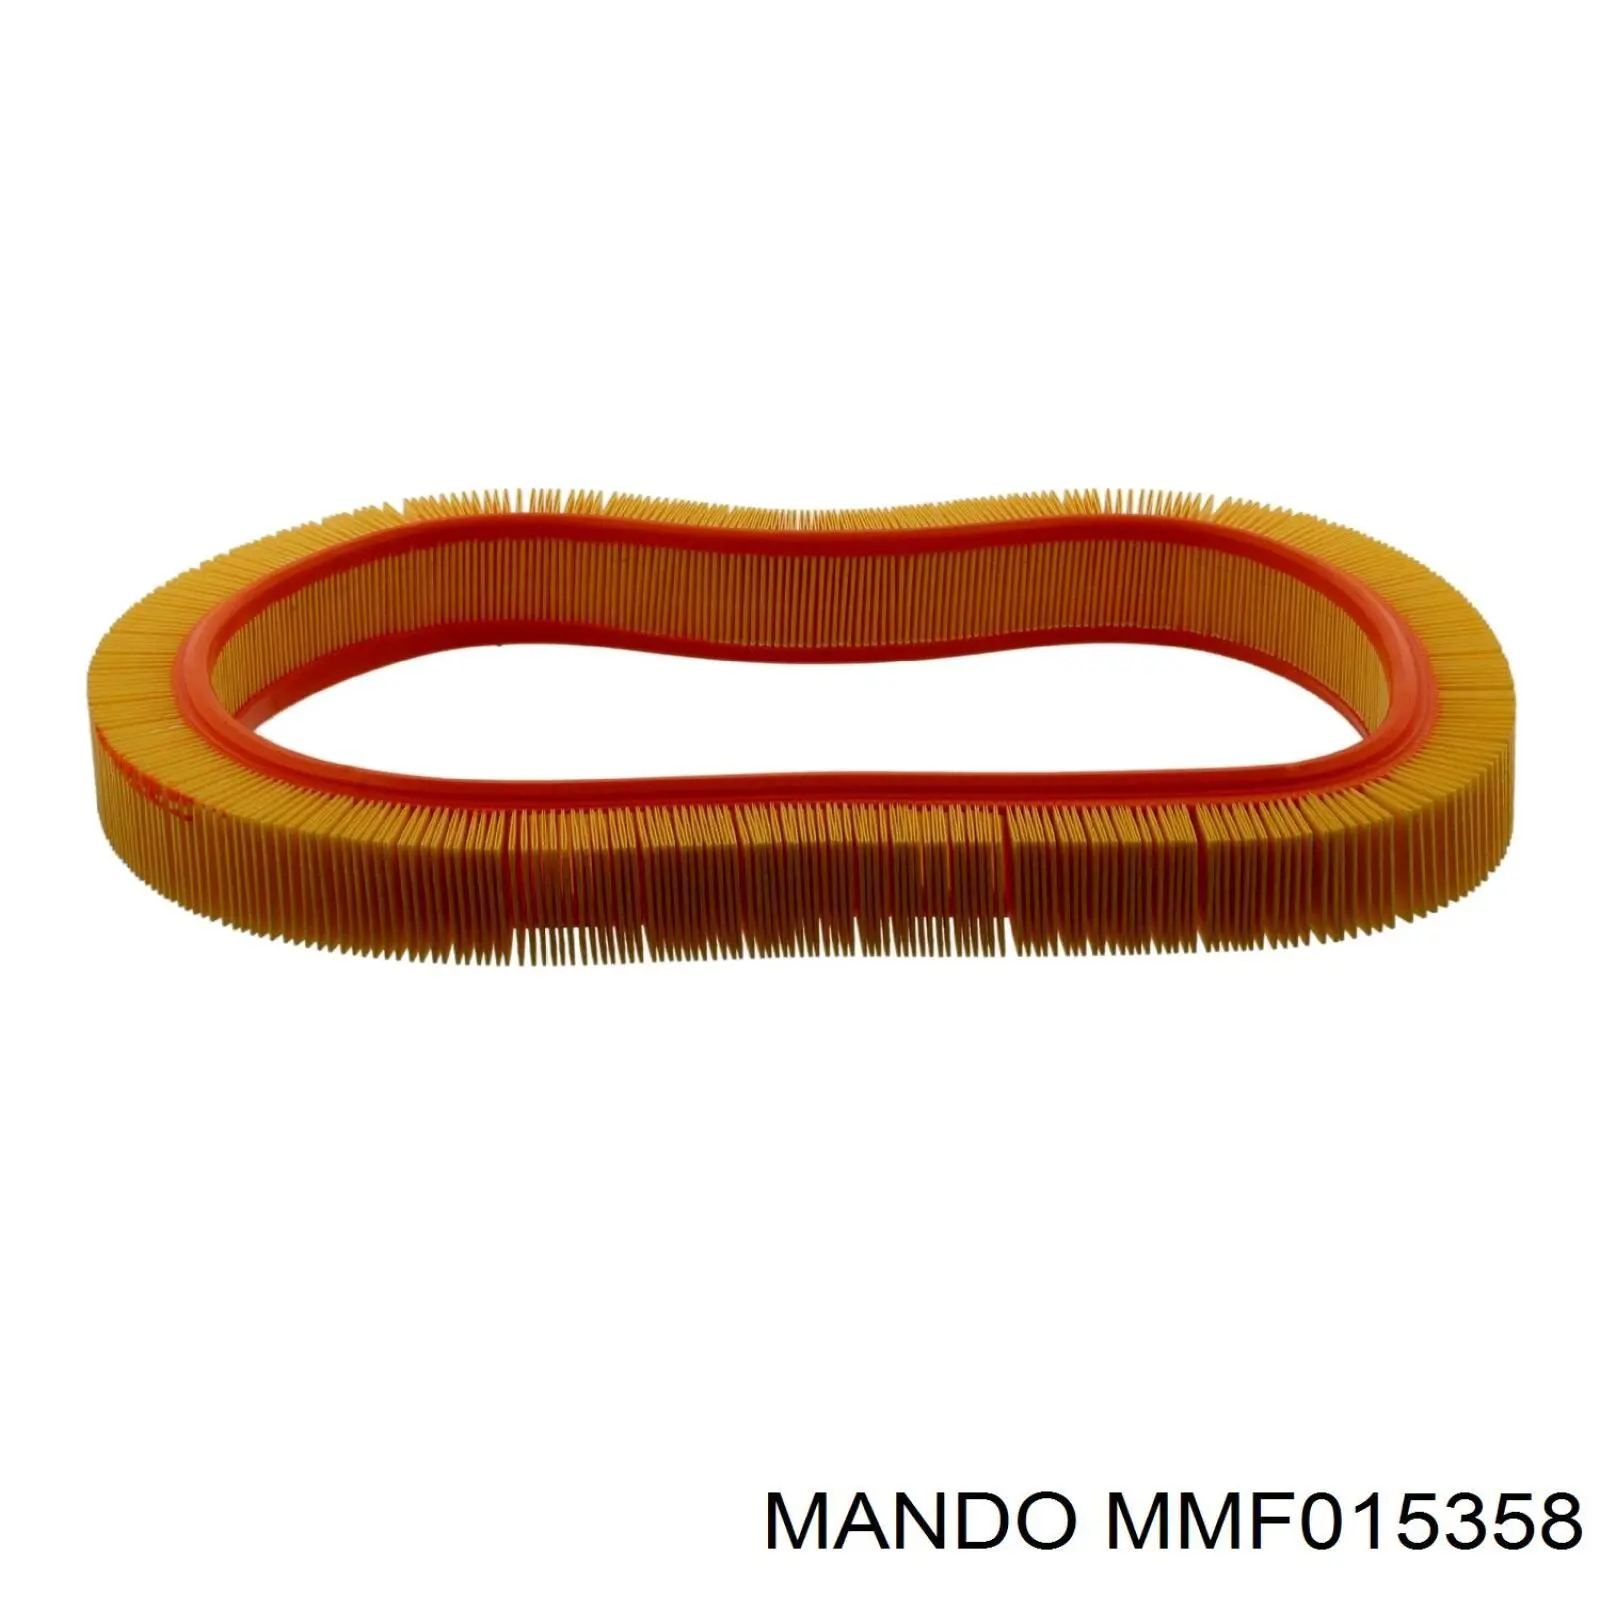 MMF015358 Mando воздушный фильтр